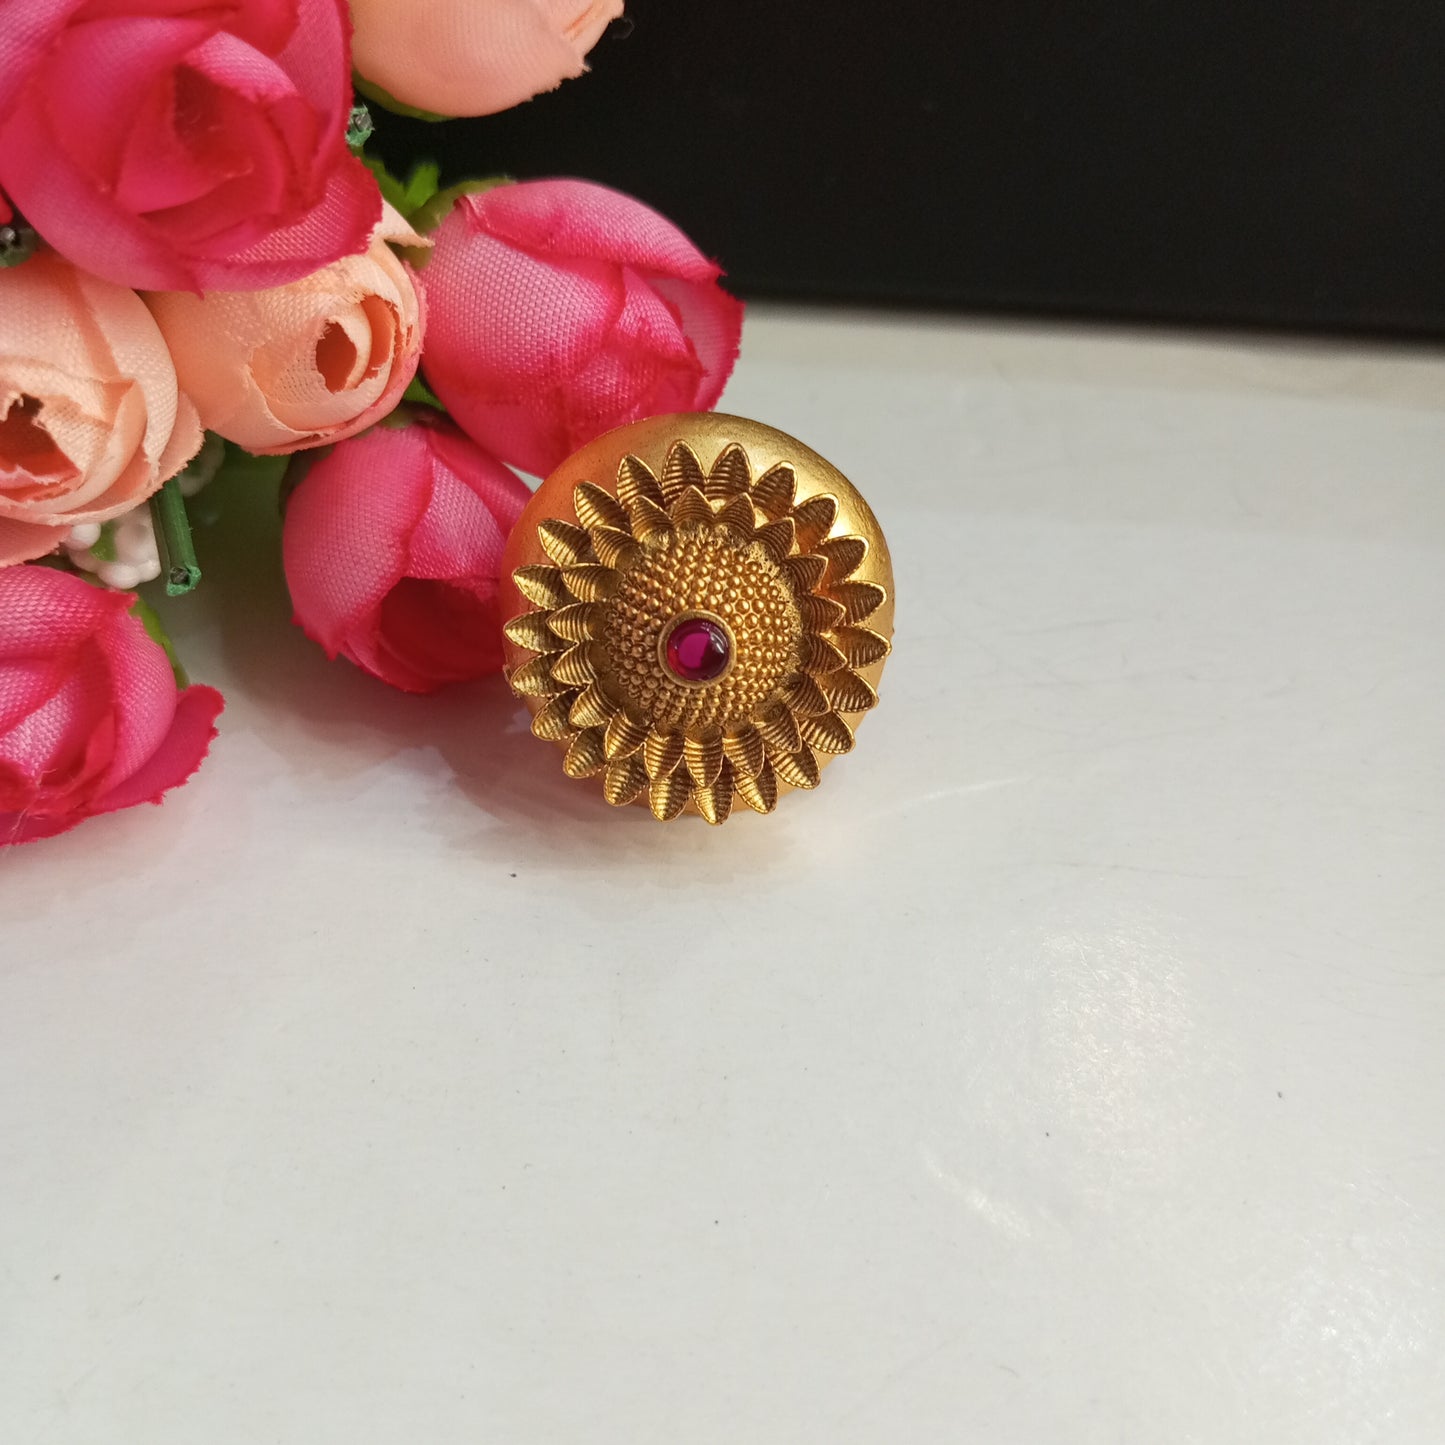 Matte Finish Adjustable Ring- Crafted Flower design